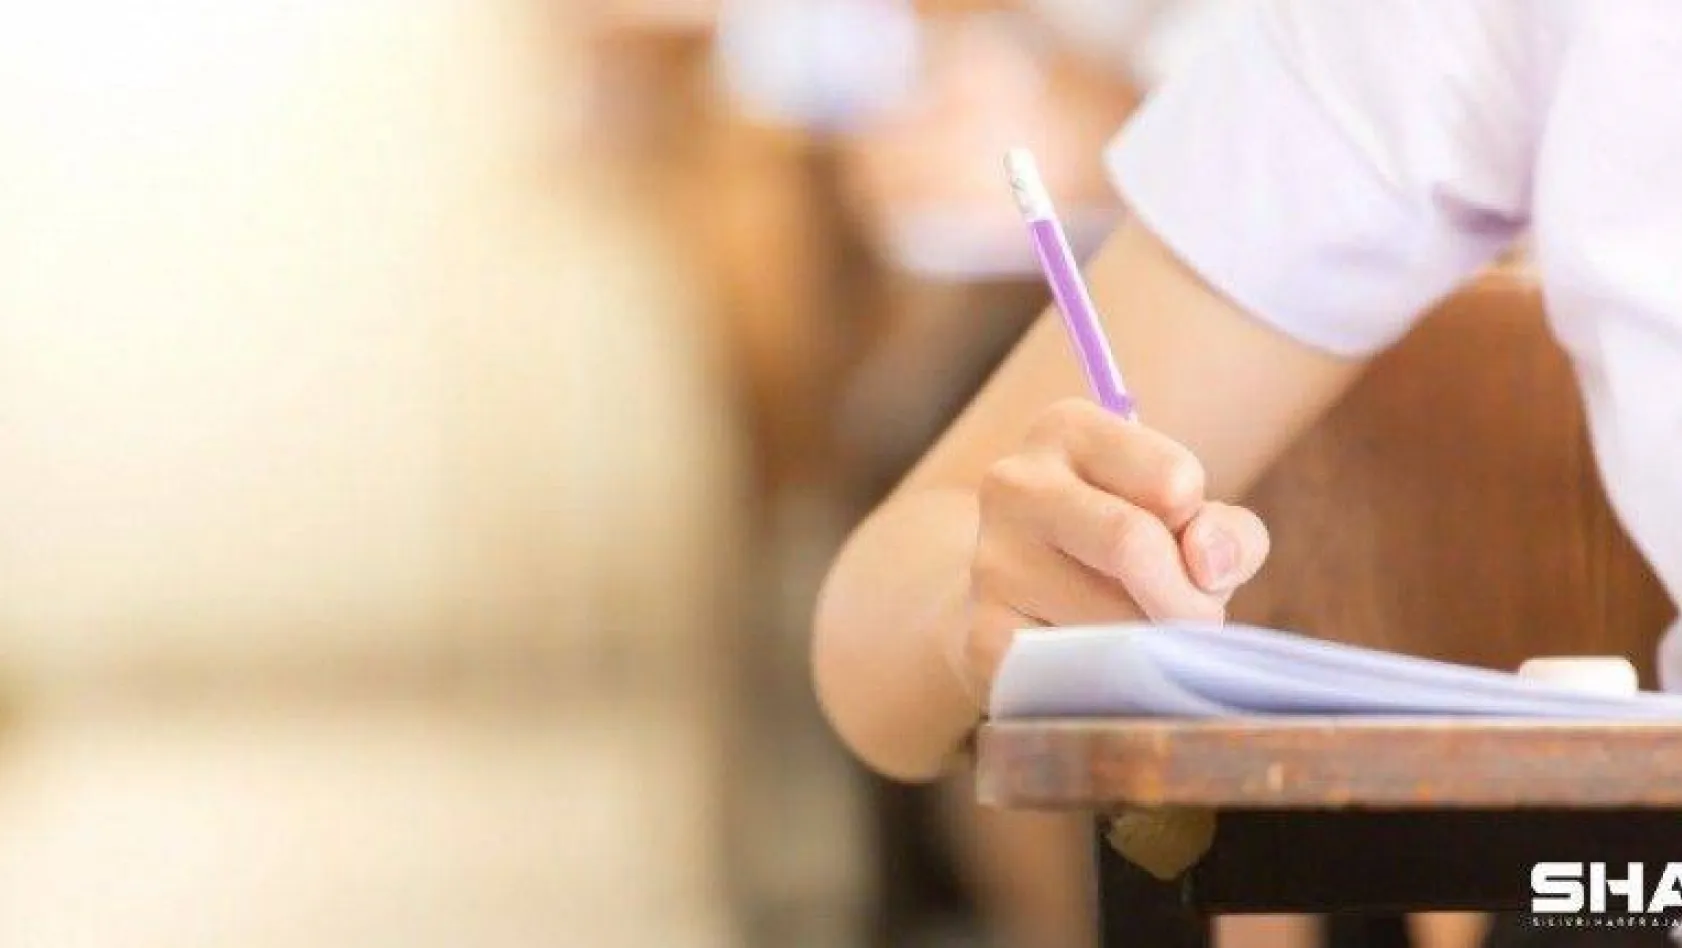 2021-YKS Sınava Giriş Belgeleri erişime açıldı